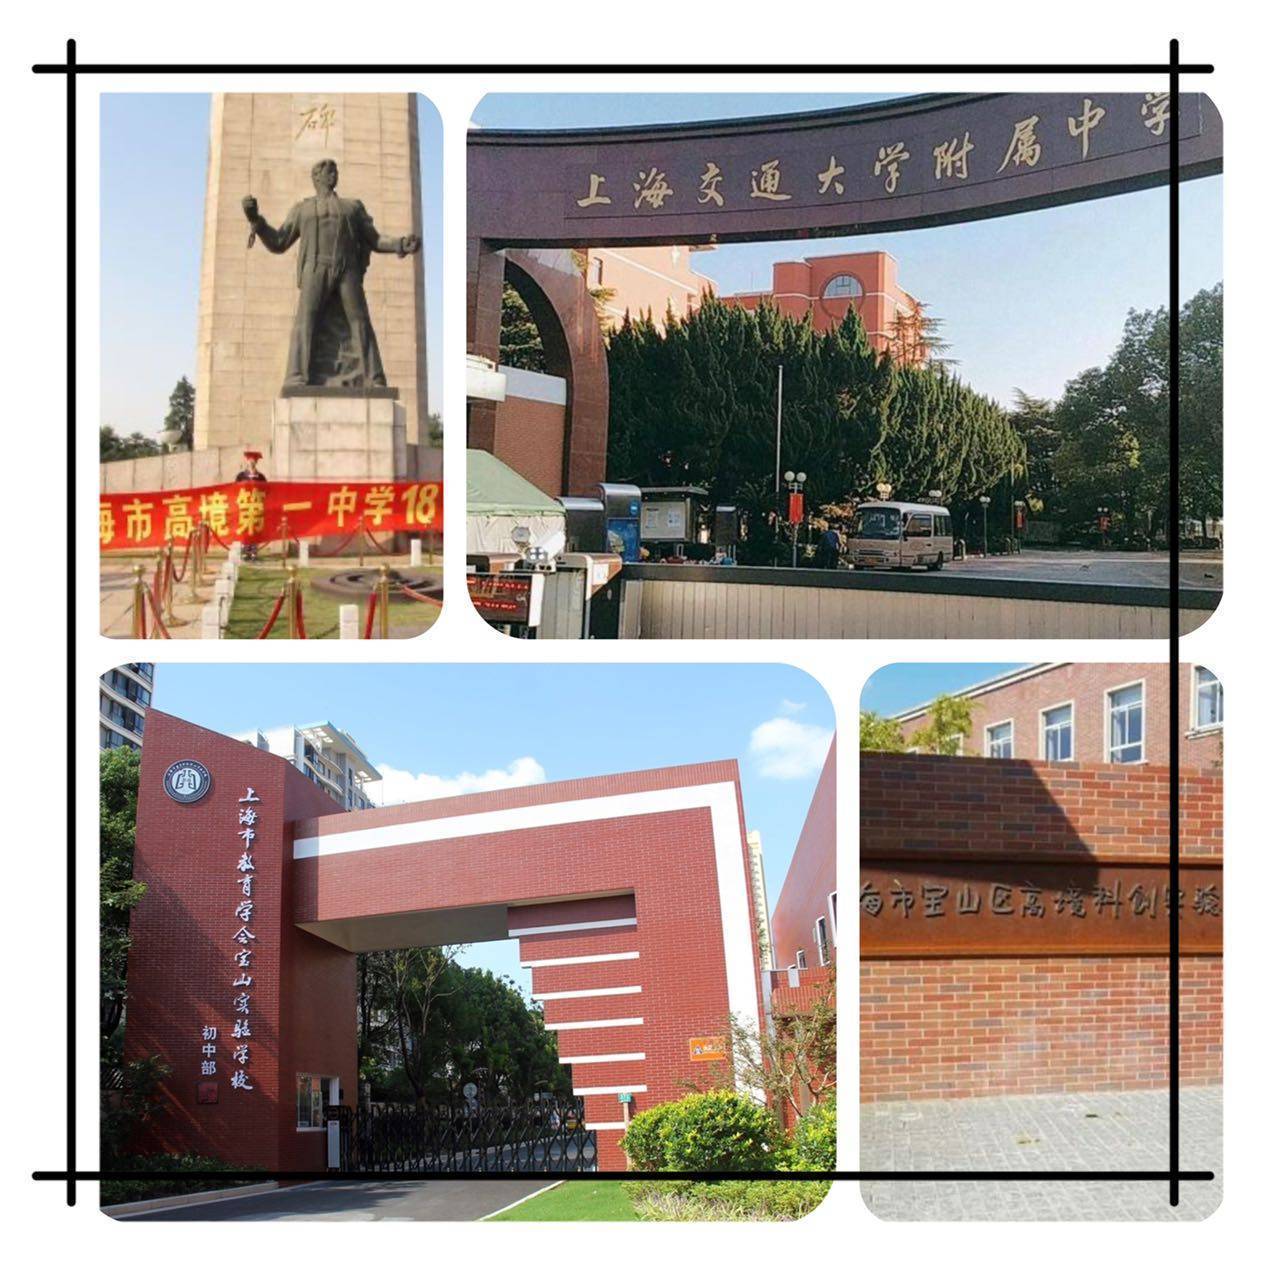 上海市高境第一中学,上海交通大学附属中学等初高中;上海市宝山区高境